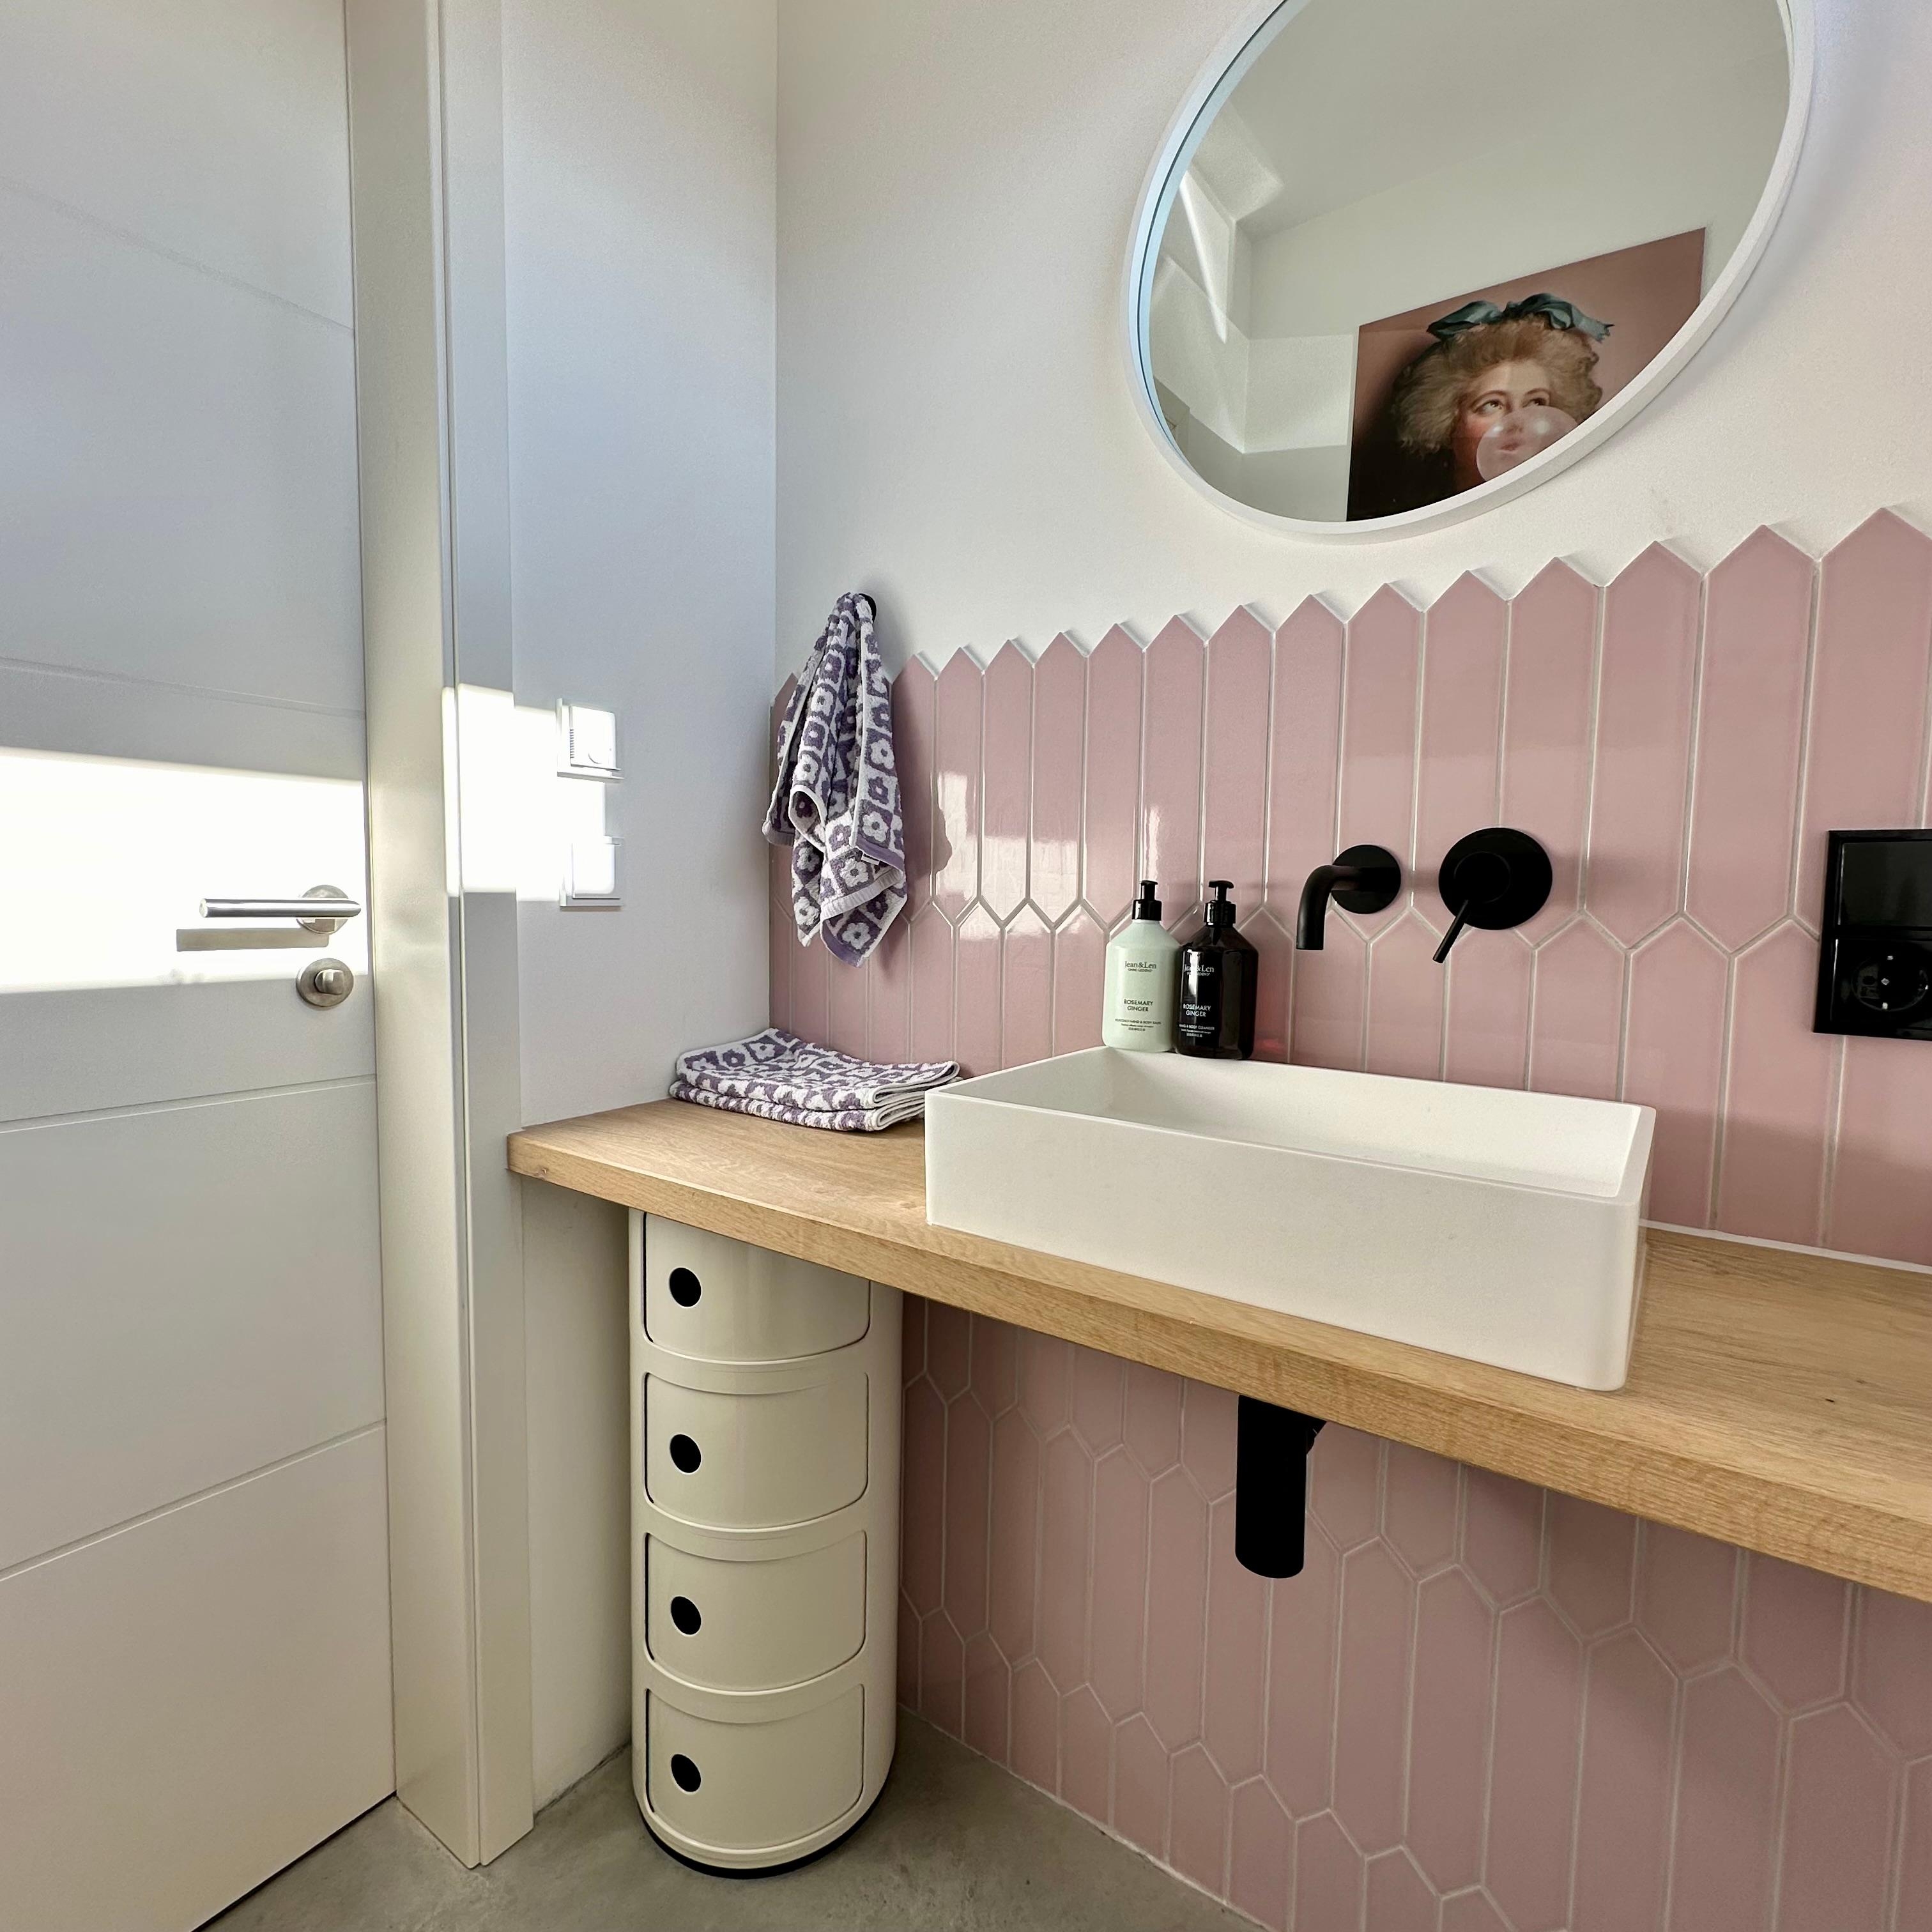 Gäste-WC grüßt! 

#gästewc #toilette #badezimmer #fliesen #rosa #klo #sichtestrich 